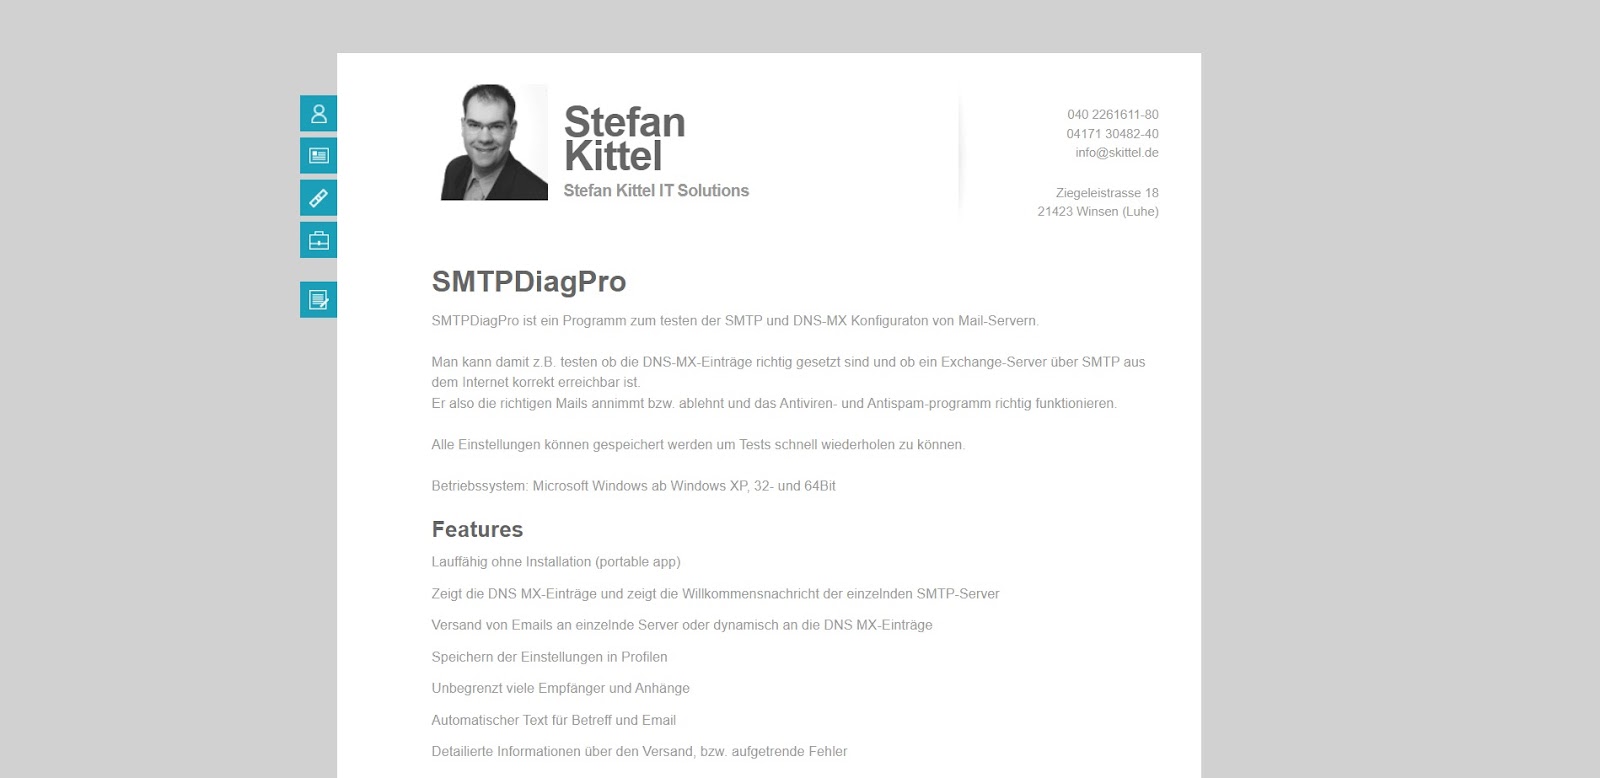 A screenshot of SMTP's website